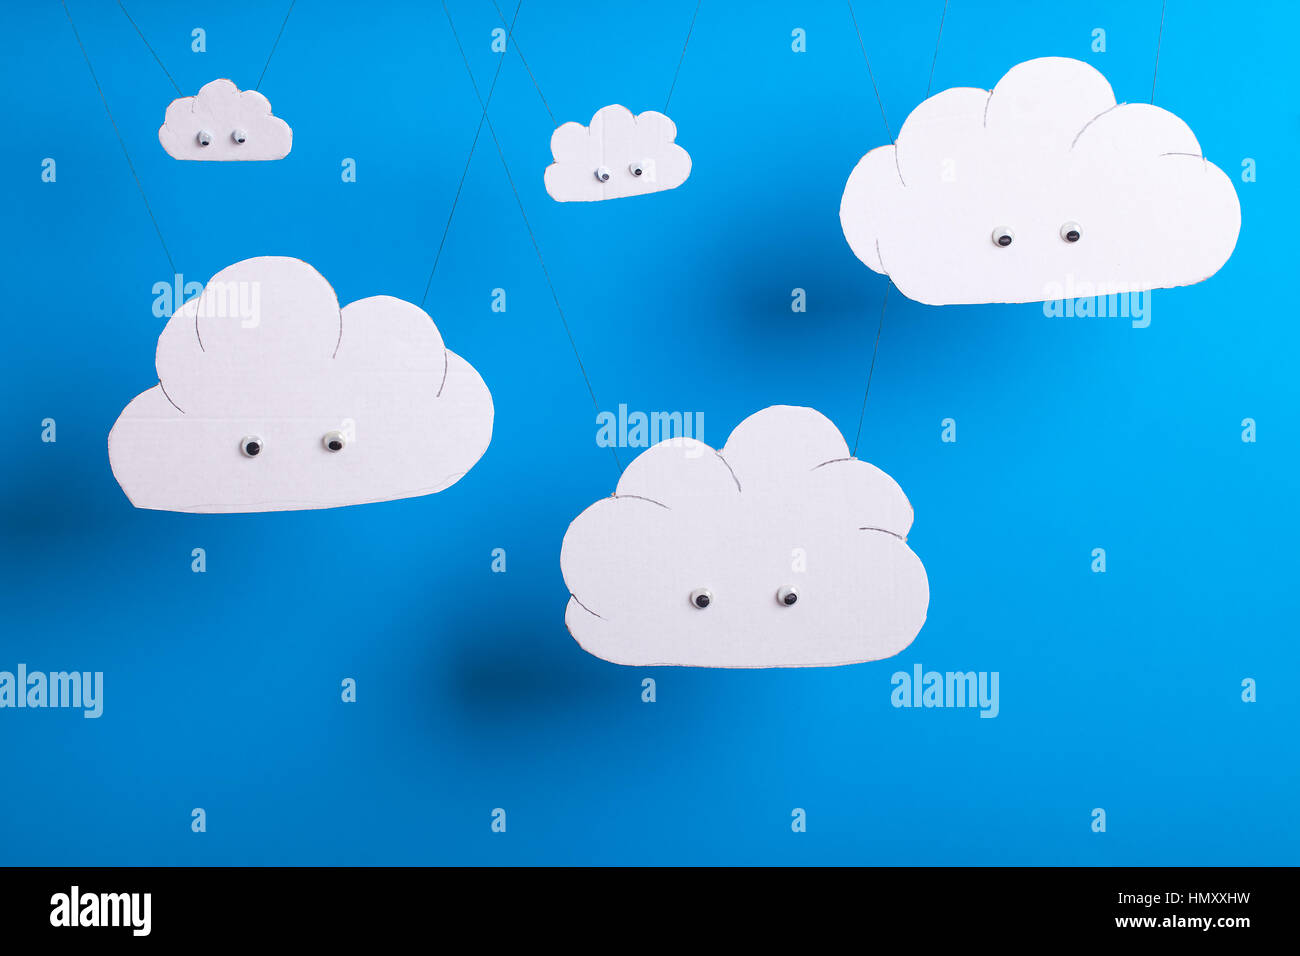 Cloud-computing-Konzept mit niedlichen weißen Karton Ausschnitt Wolken mit Augen hängen vor einem blauen Hintergrund. Stockfoto